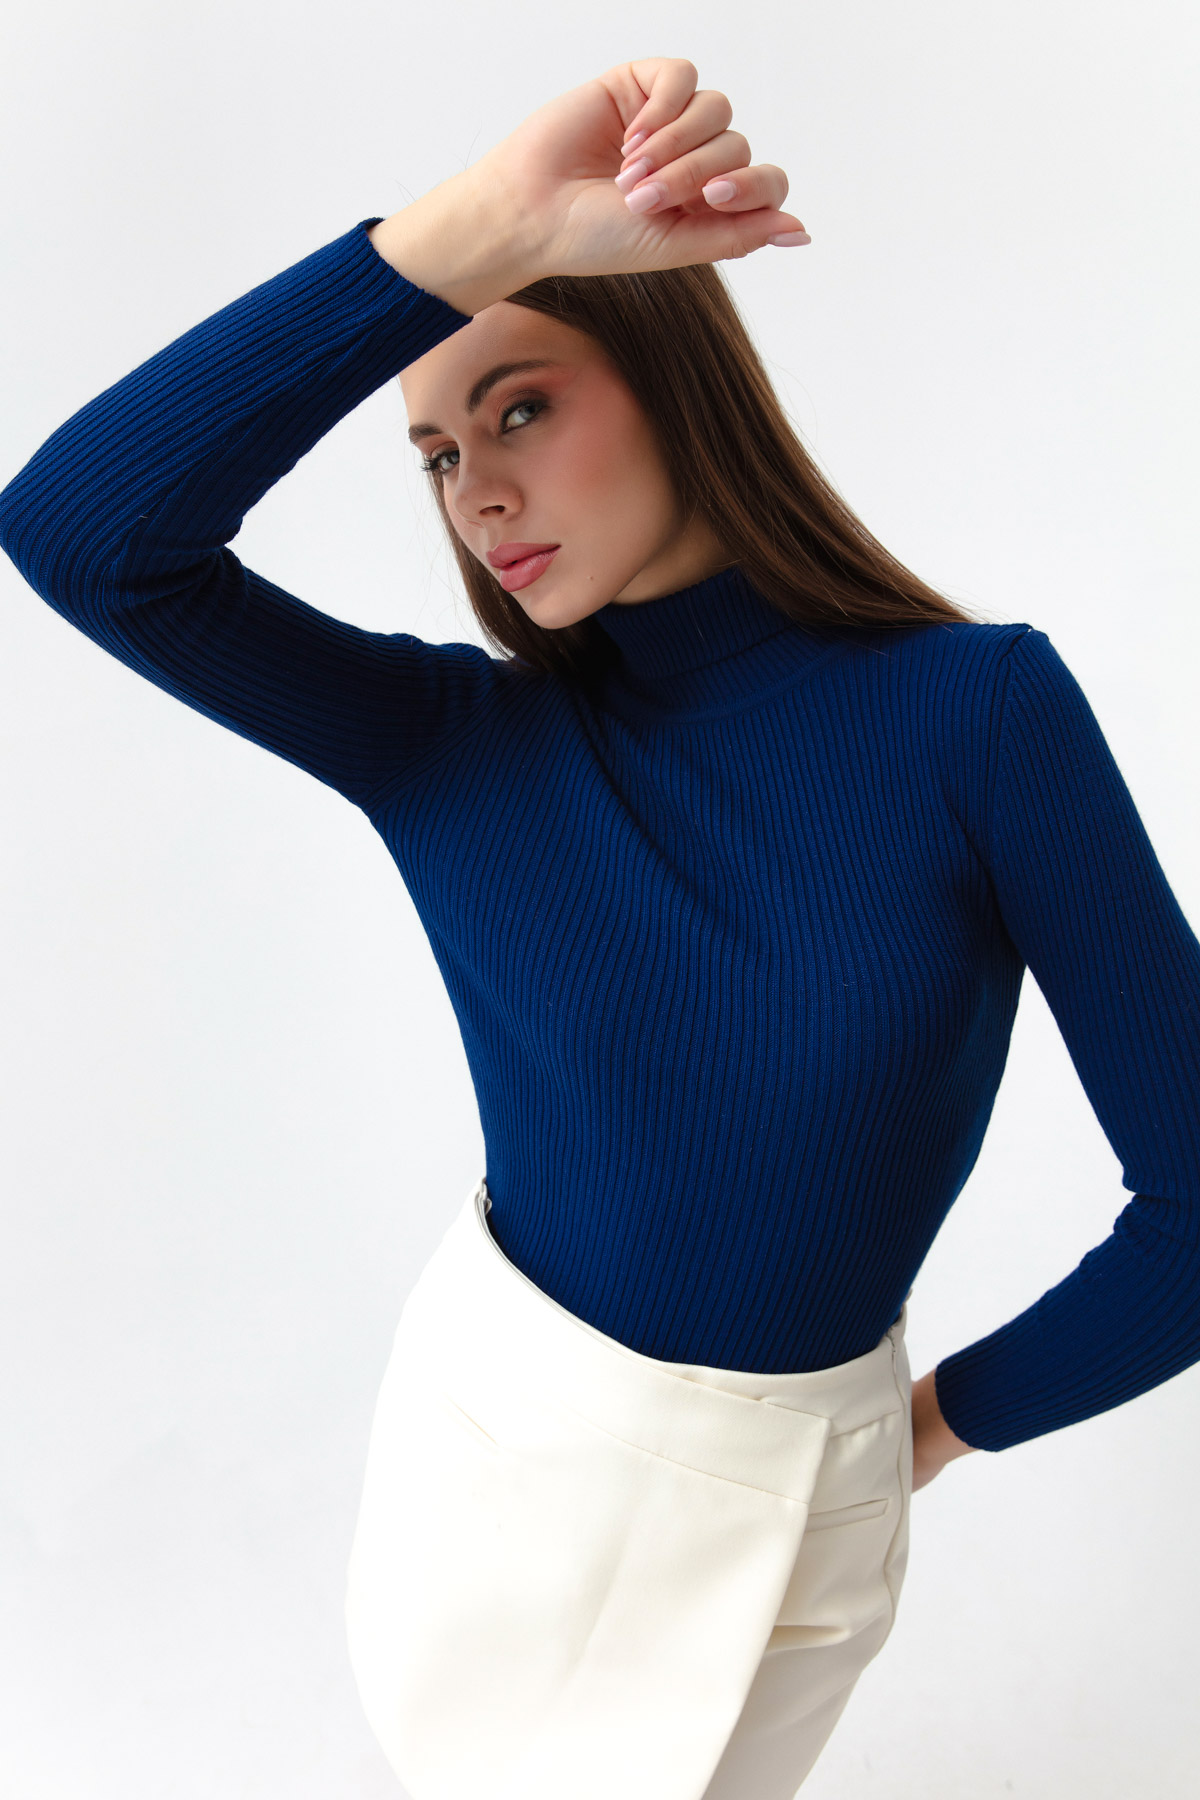 Women's Blue Turtleneck Knitwear Sweater